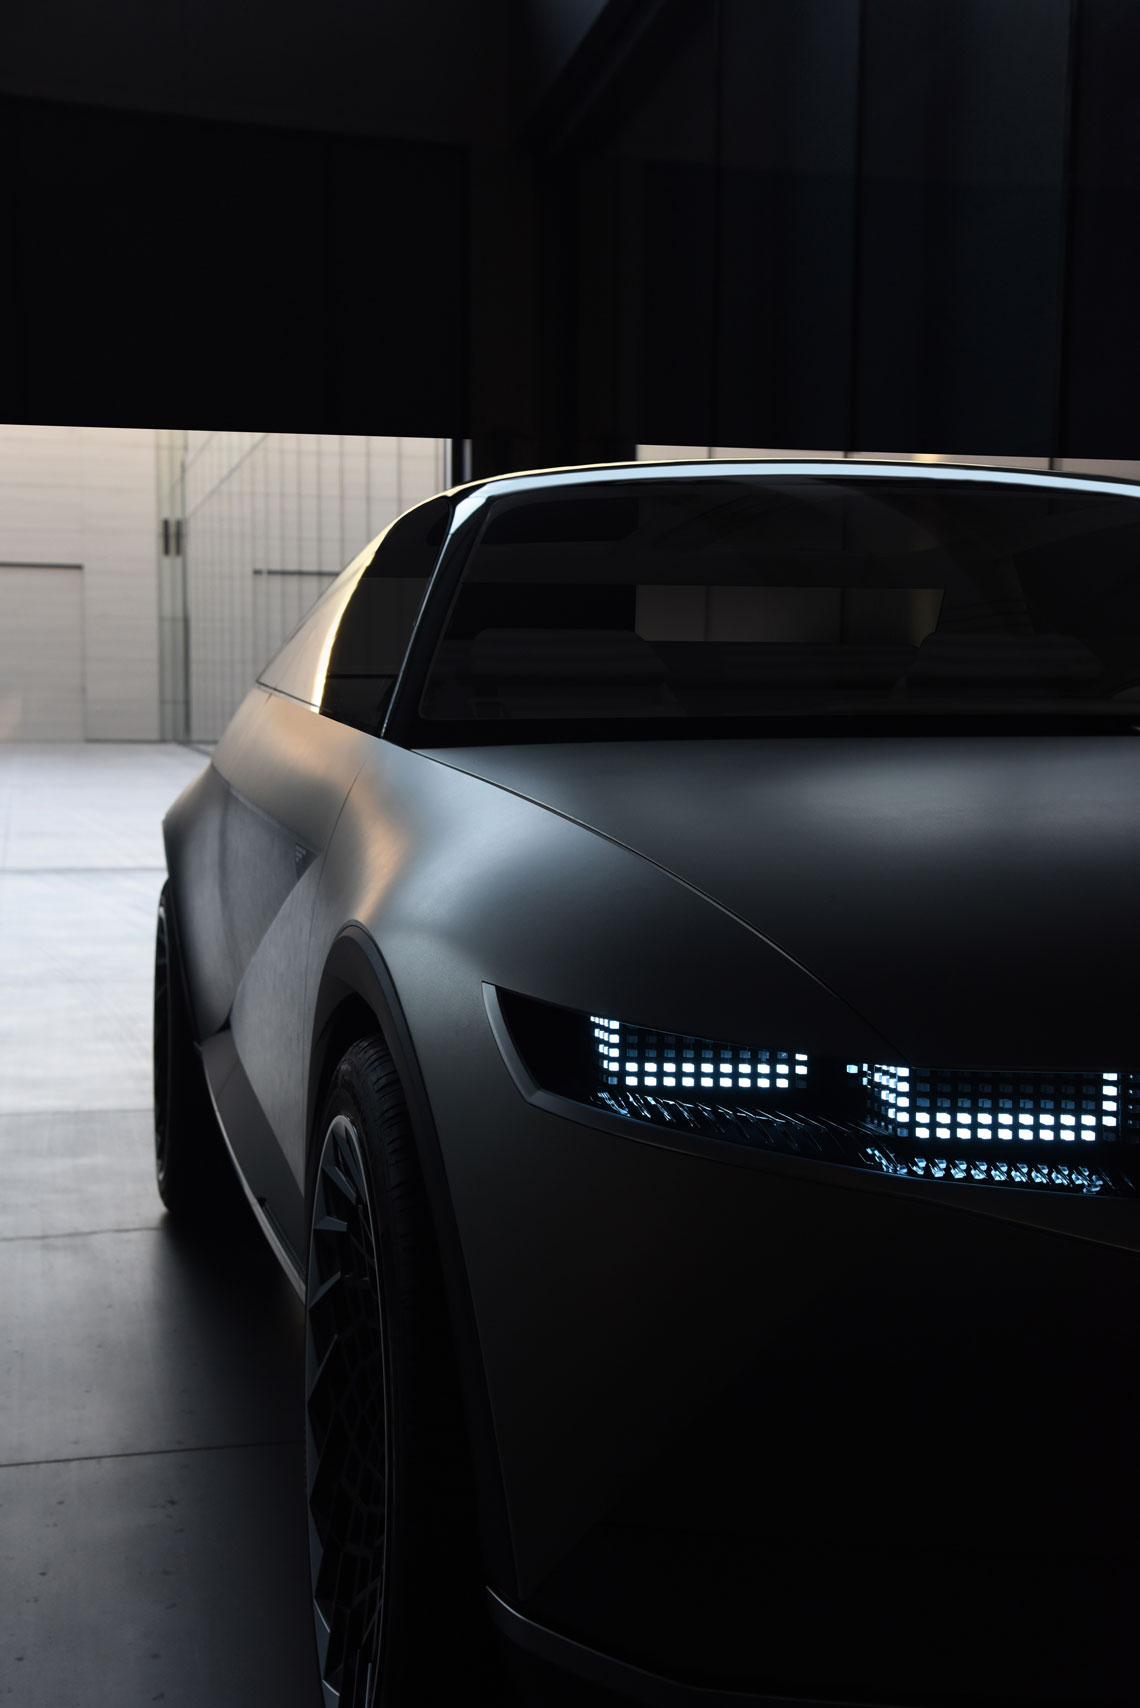 Дизайн системи освітлення Hyundai виведено на новий рівень. Внизу передніх дверей вбудовані світлодіодні індикатори заряду батареї – "статус" видно здалеку.